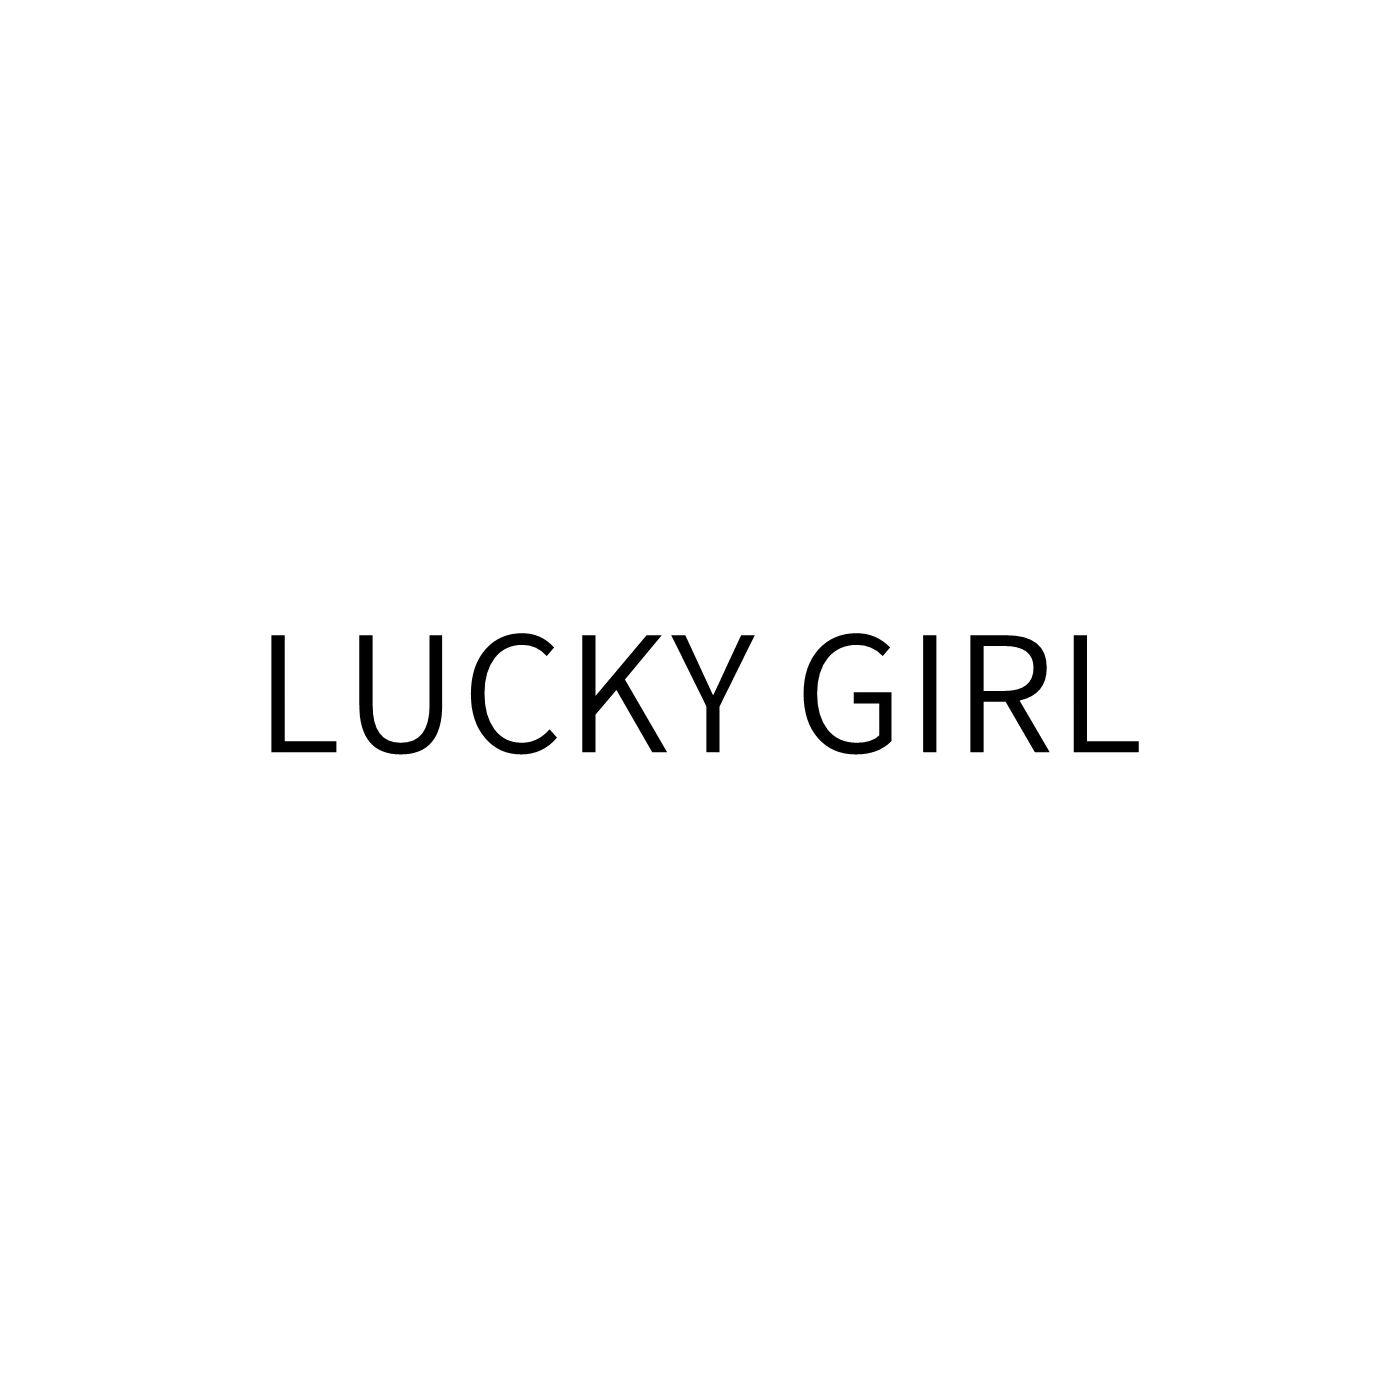  em>lucky /em>  em>girl /em>